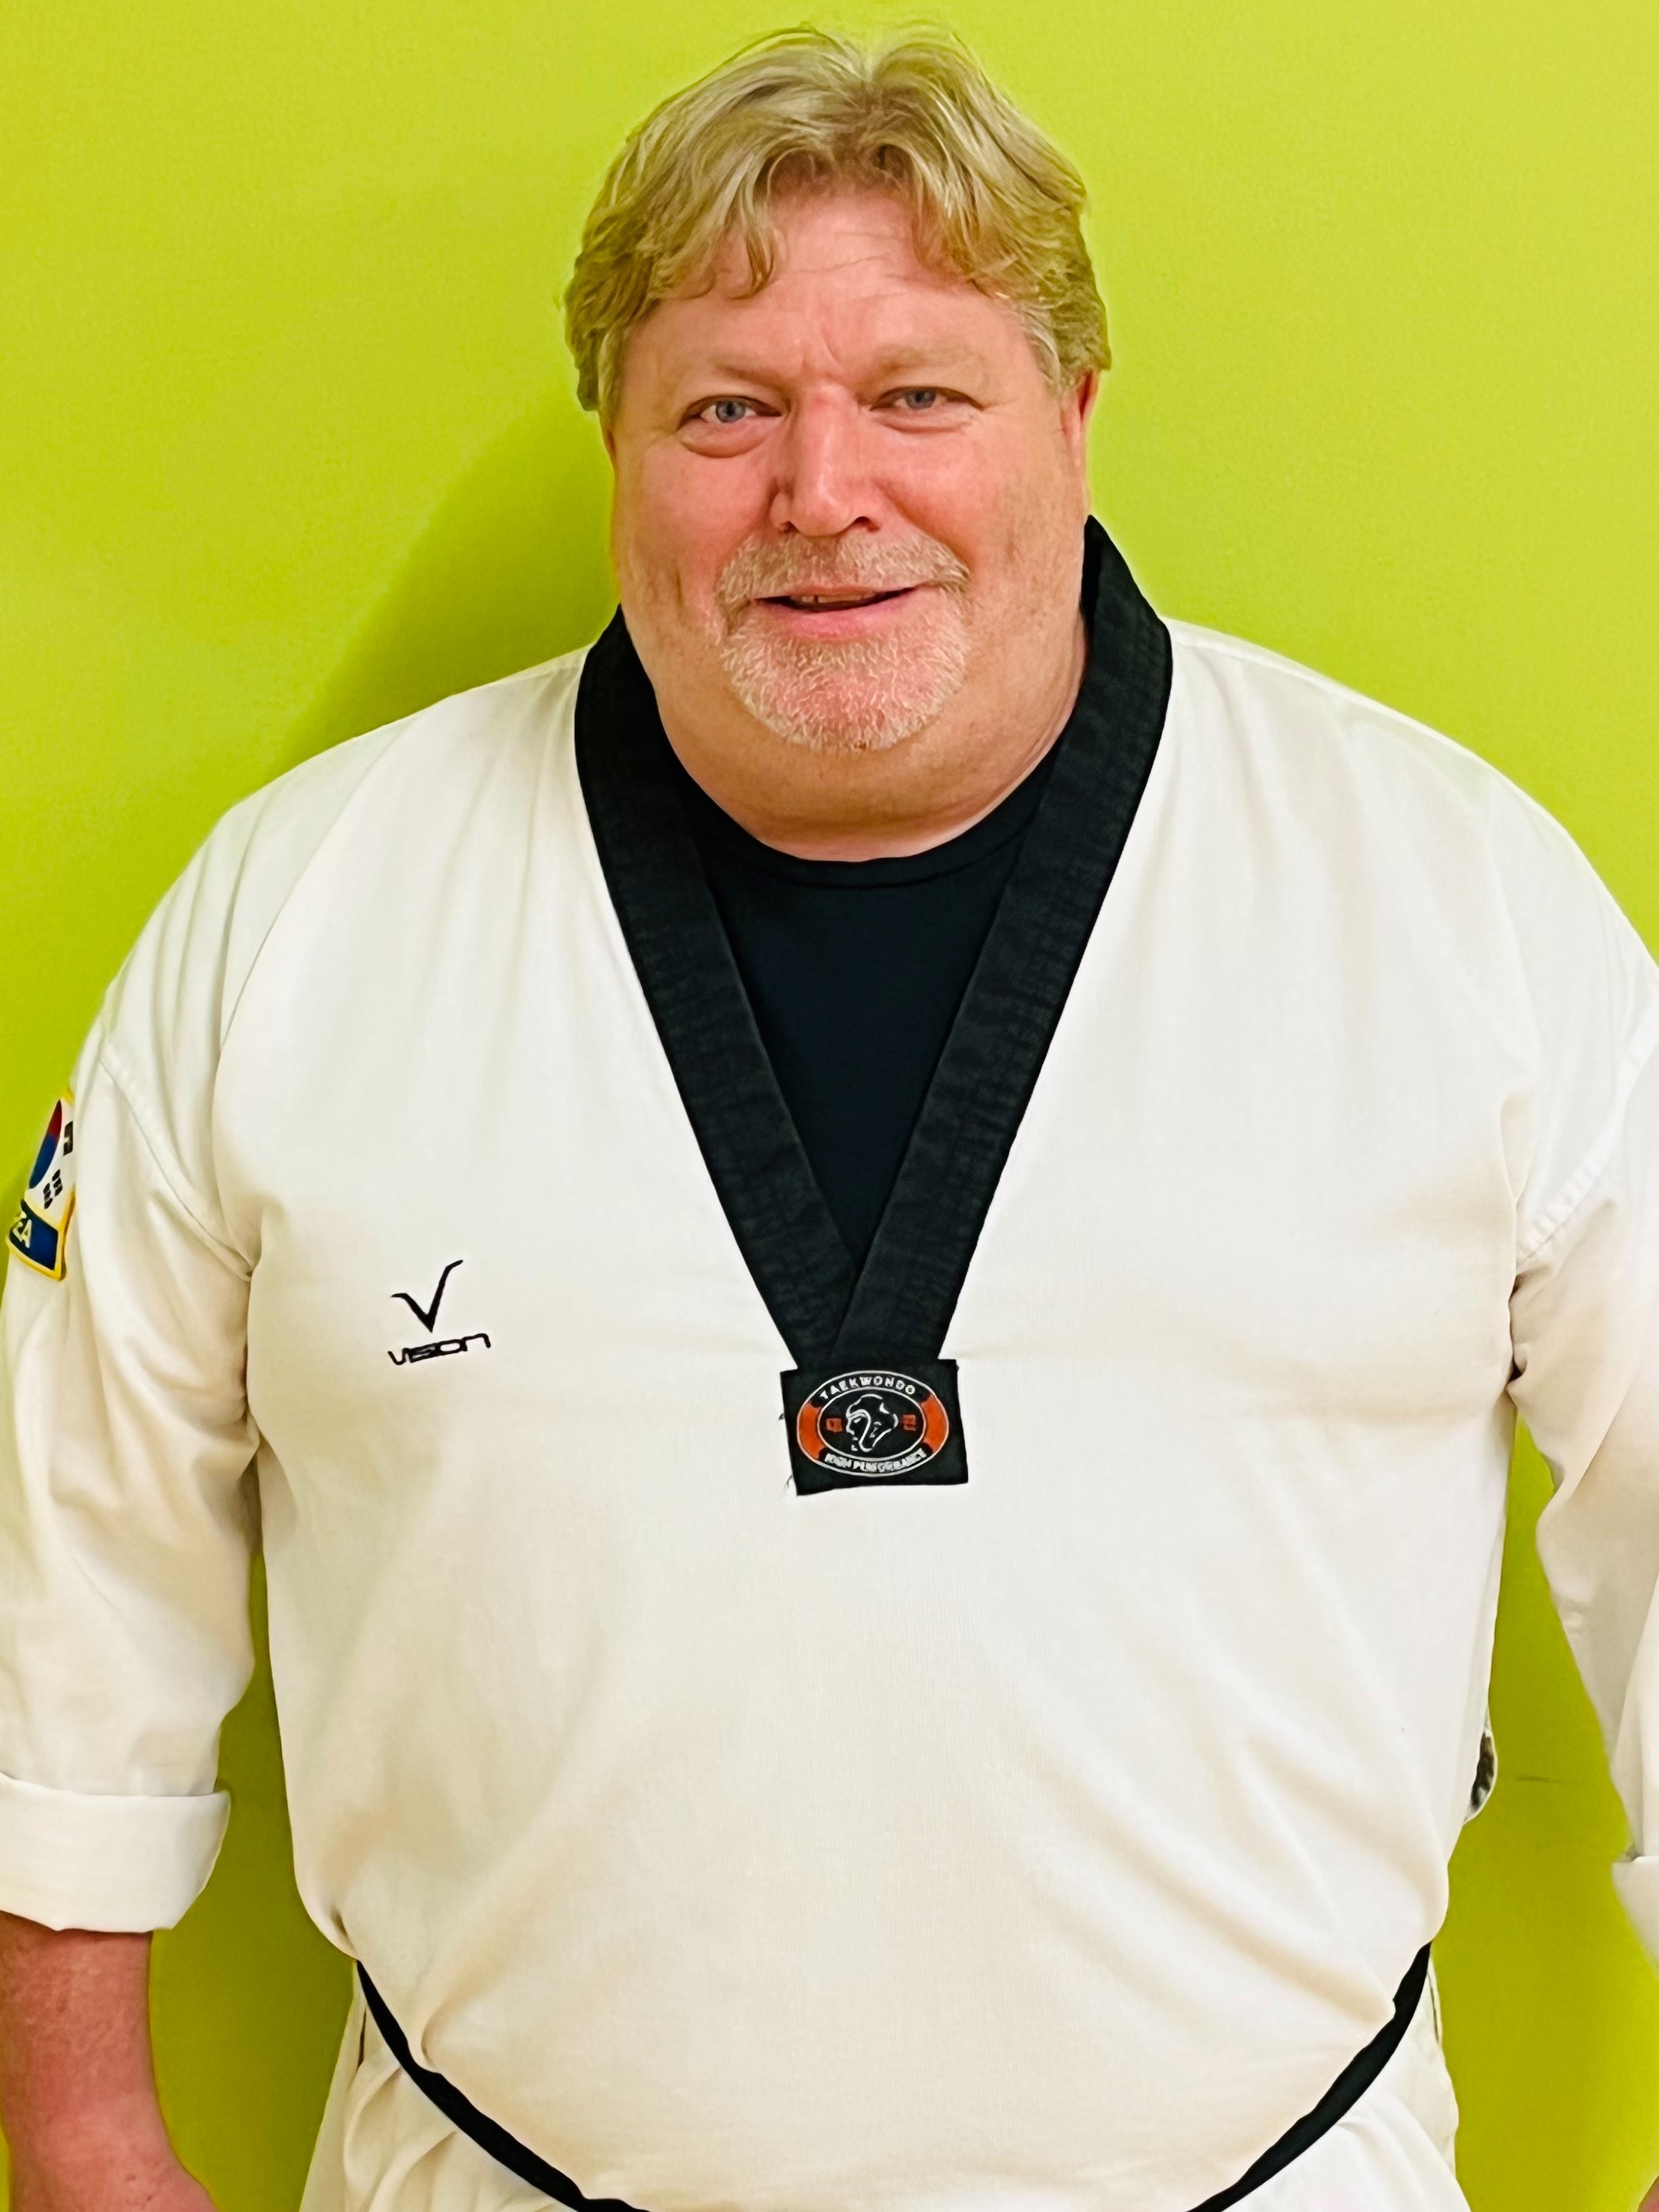 Tulsa Taekwondo Academy - Adam gist